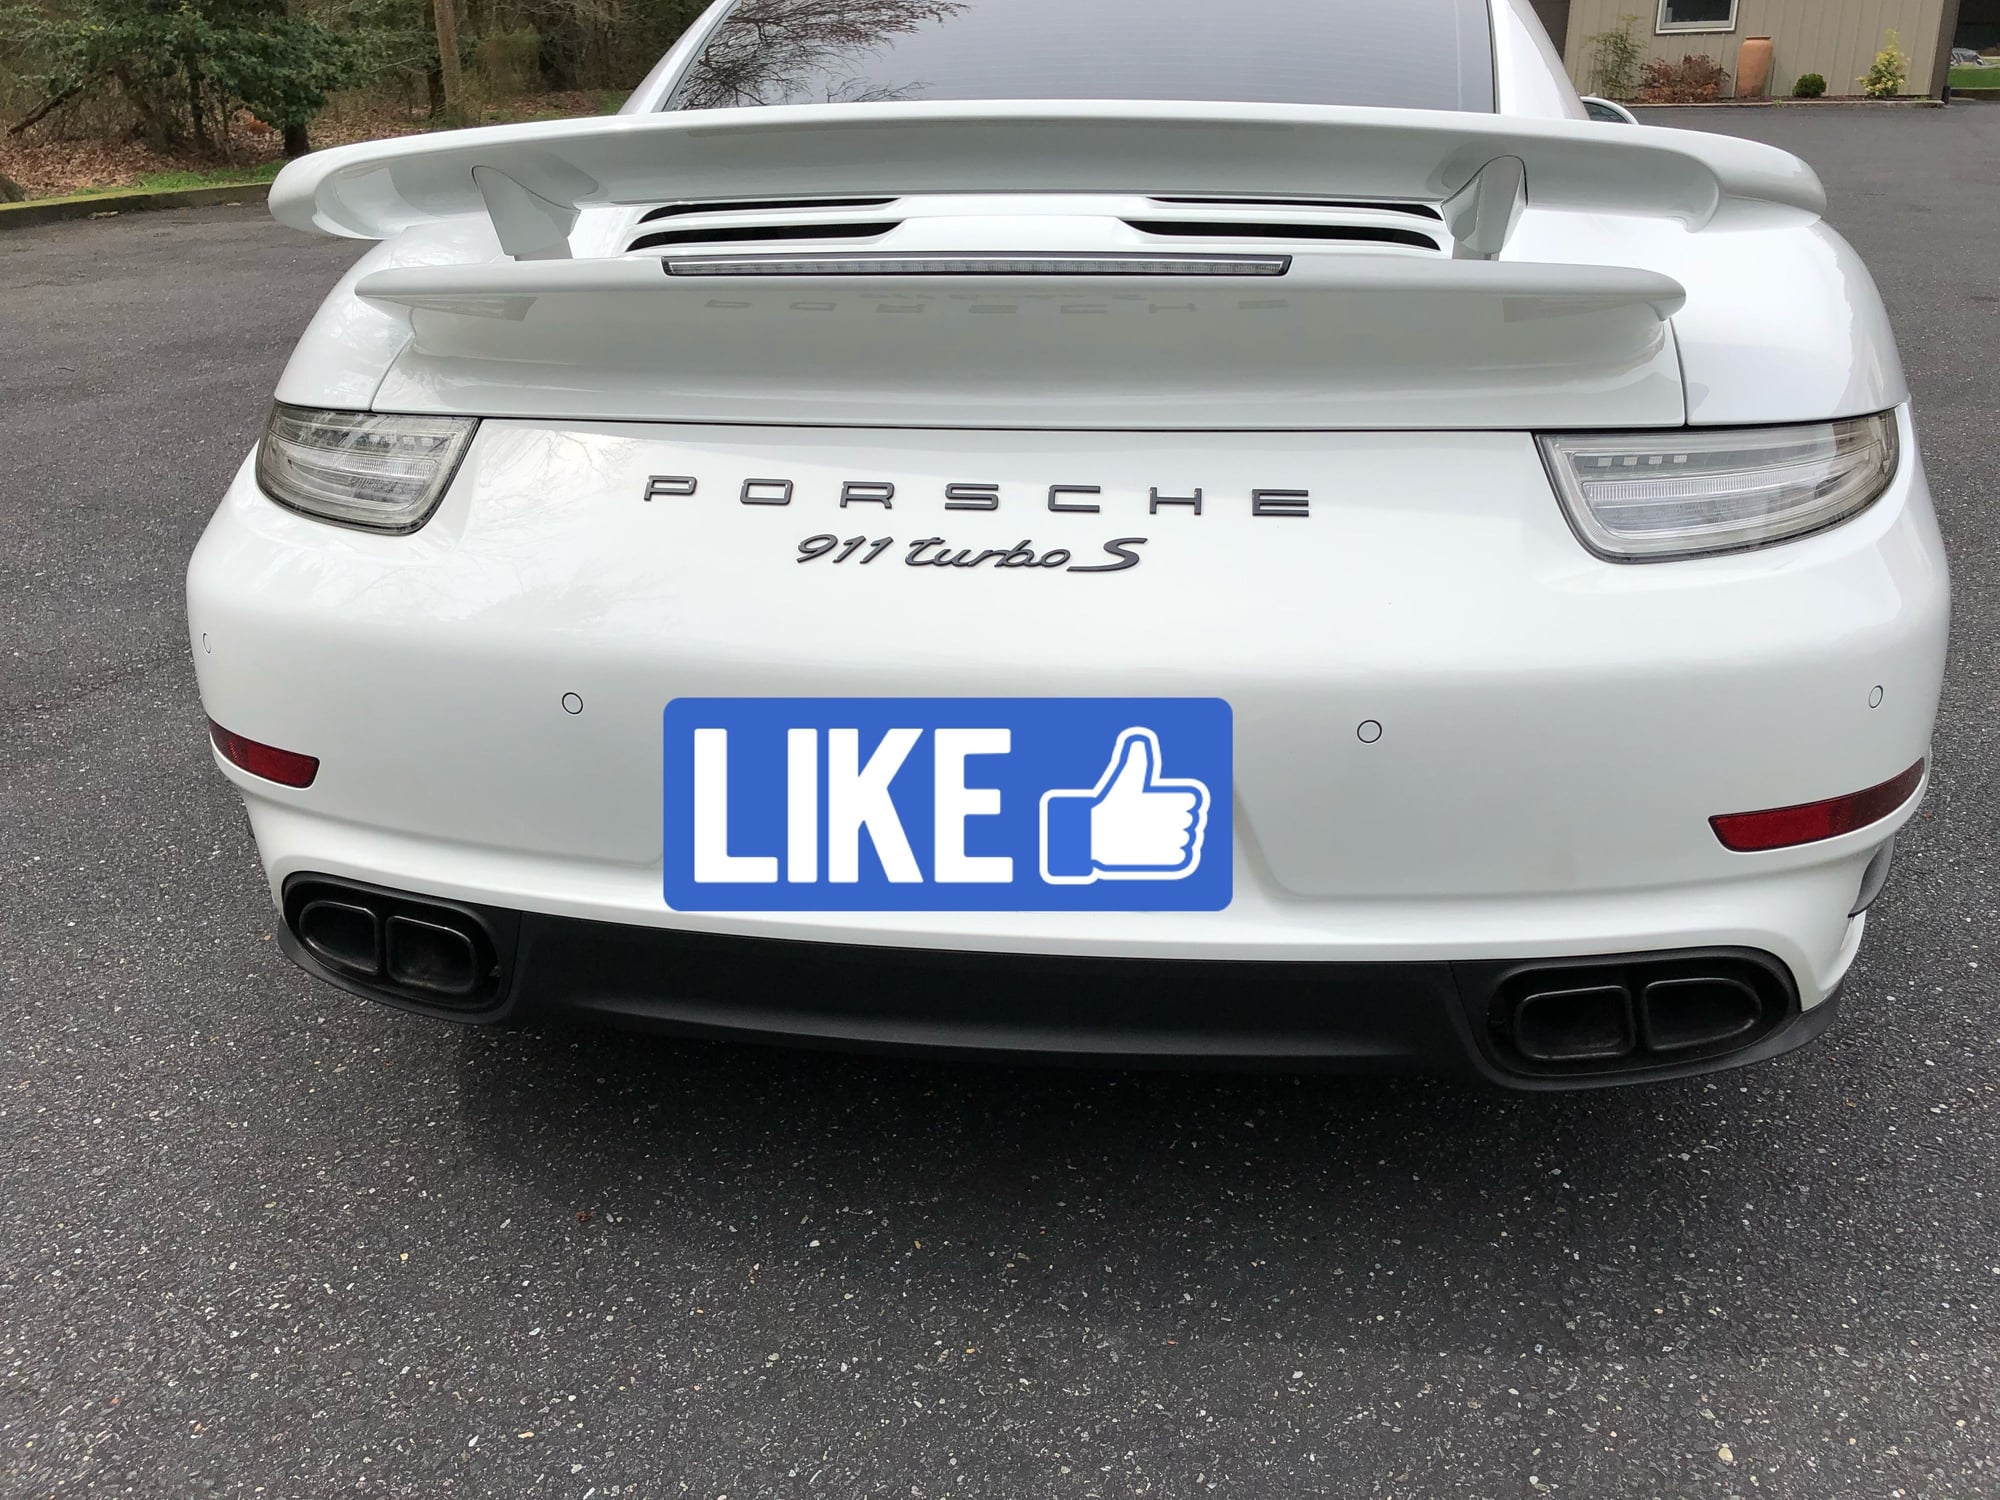 2014 Porsche 911 - CPO 2014 Porsche 911 Turbo S - Used - VIN WP0AD2A9XES166118 - 28,700 Miles - Delmar, DE 19940, United States